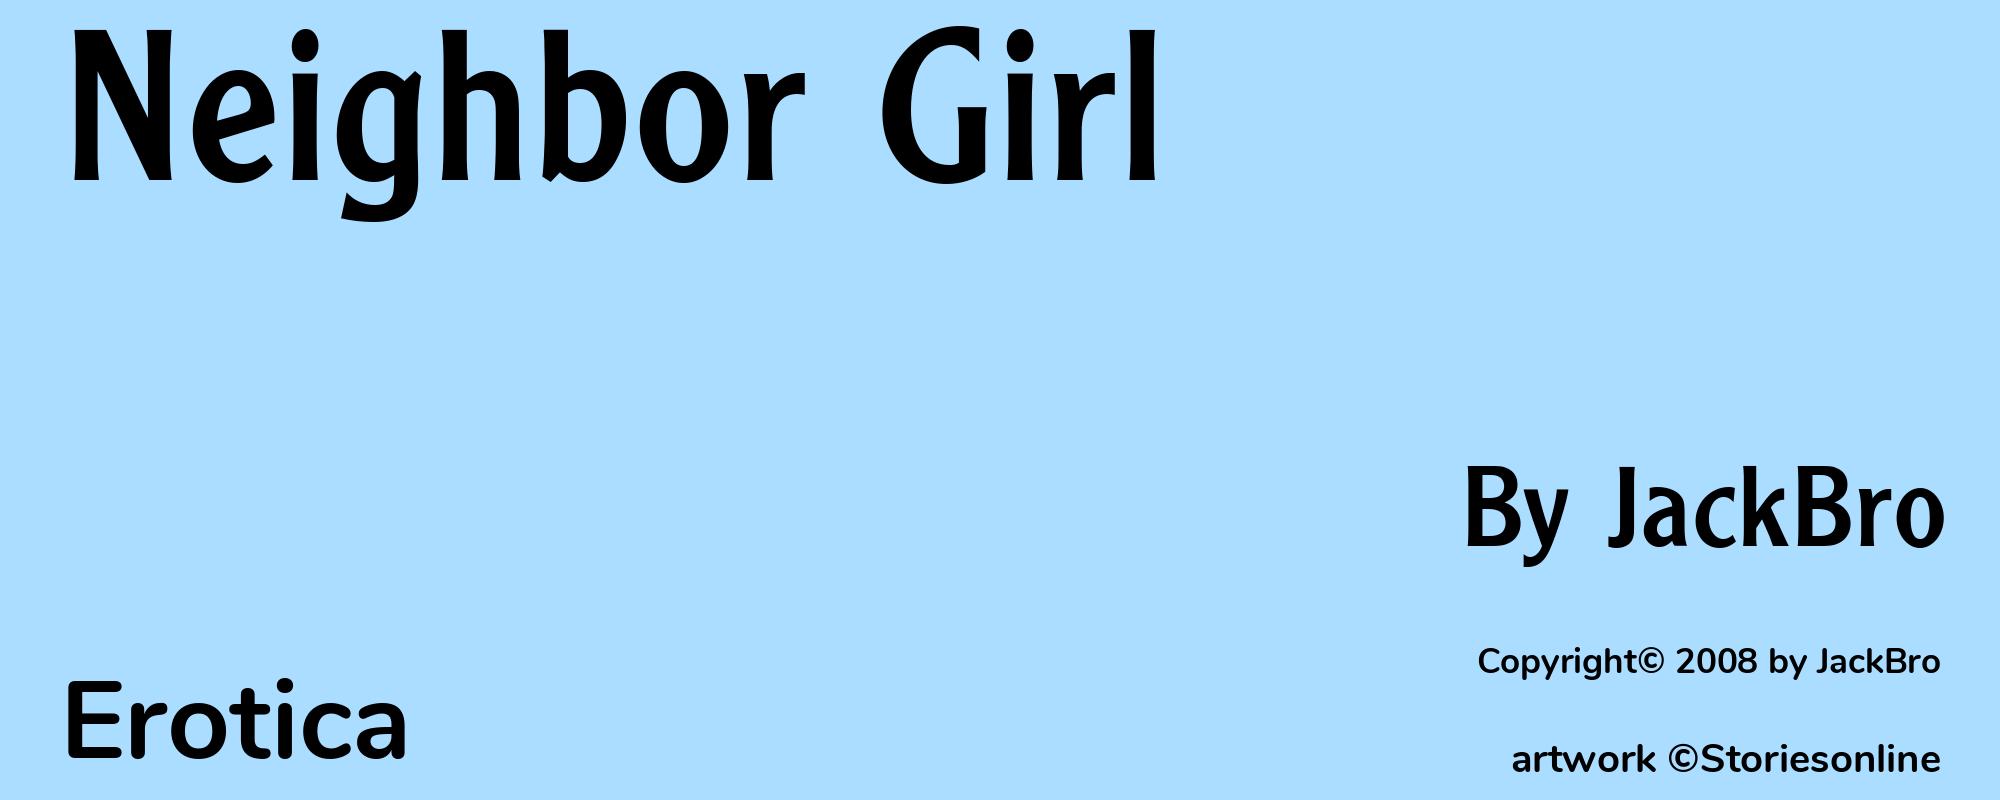 Neighbor Girl - Cover